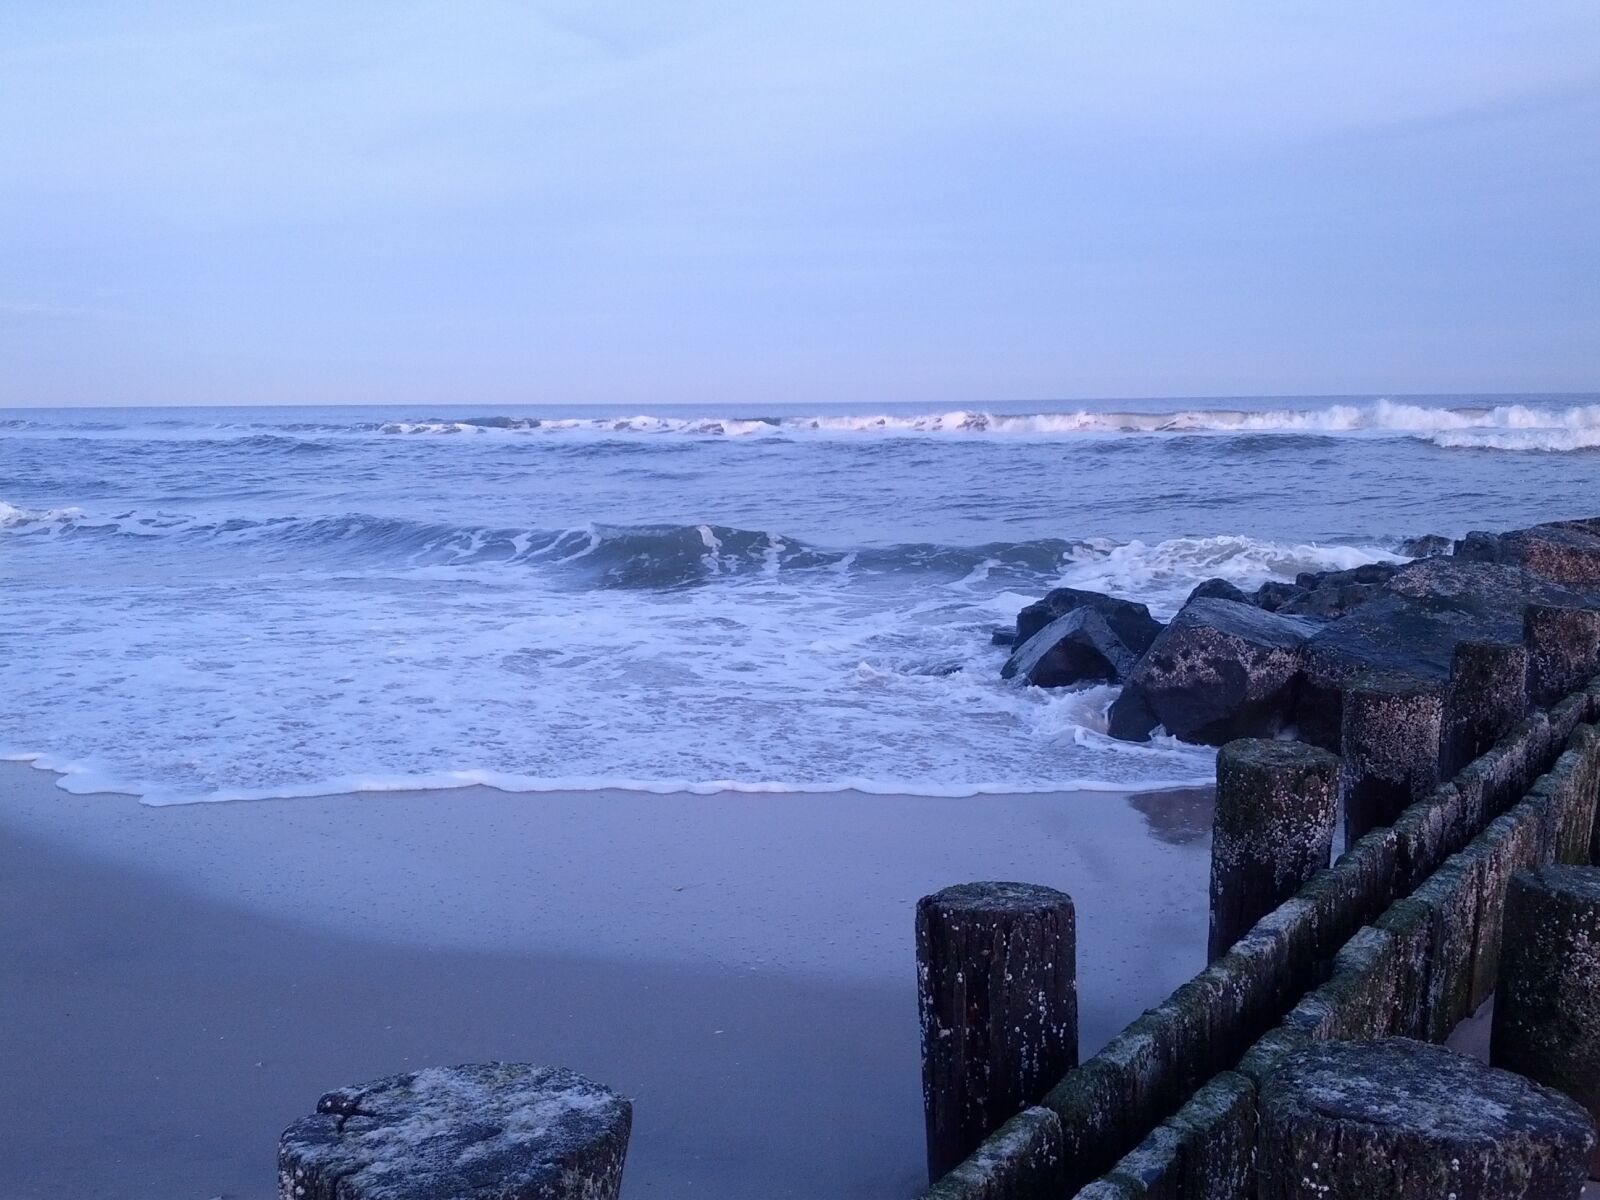 Samsung Galaxy Nexus sample photo. Ocean, beach, shore photography